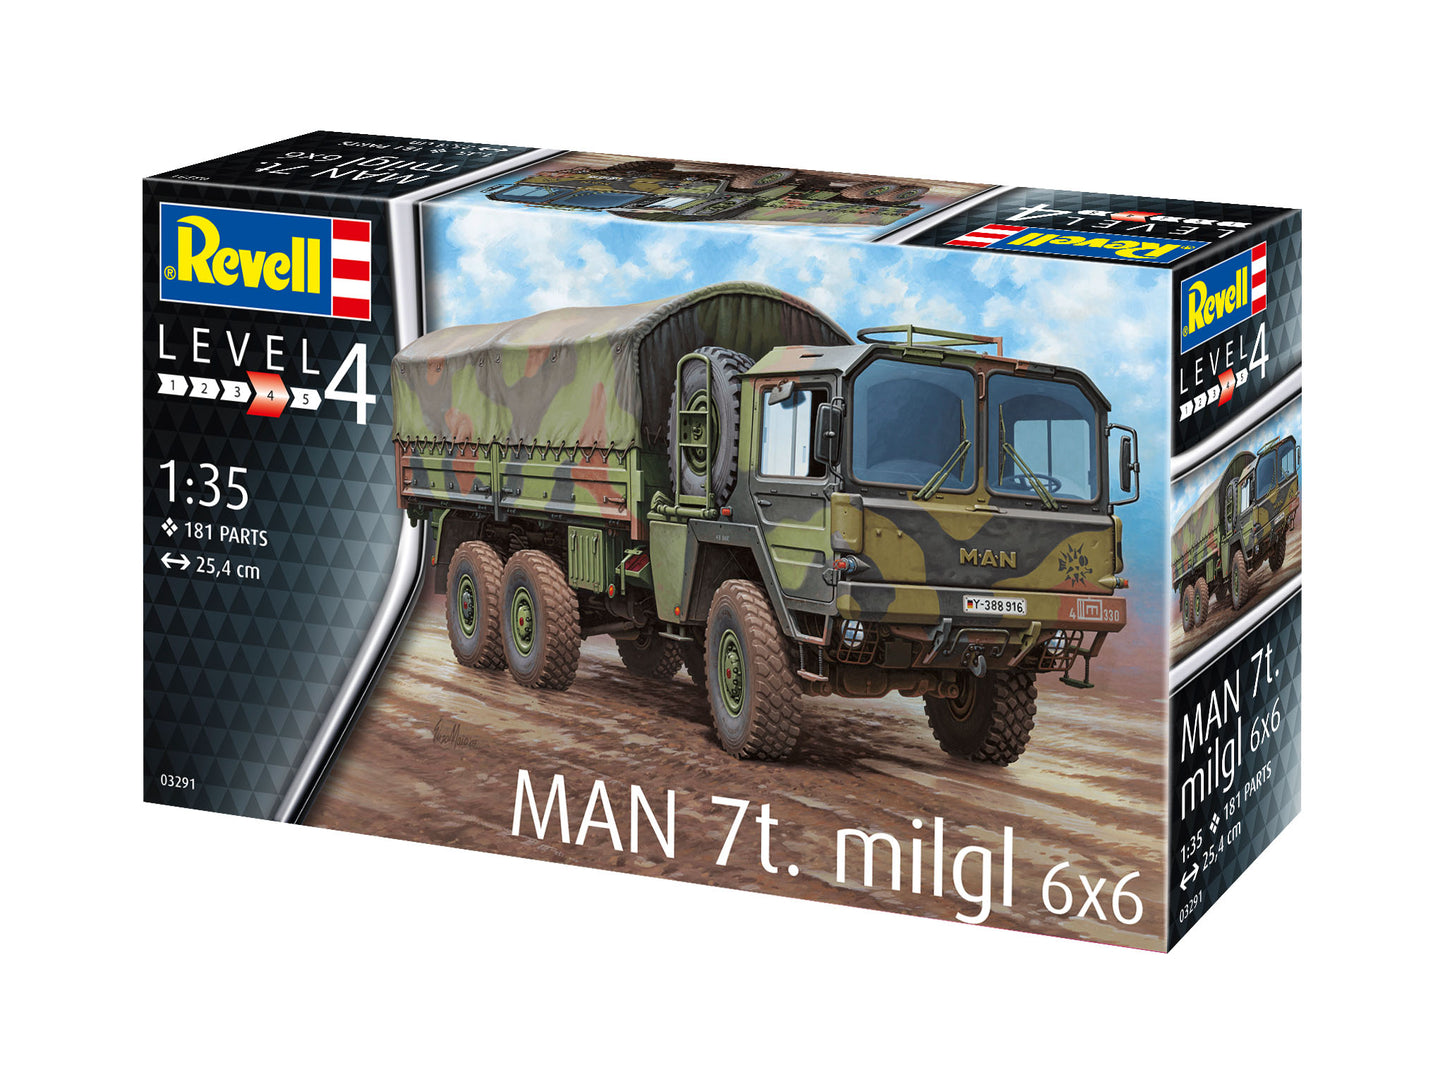 Revell of Germany 03291 1:35 MAN 7t Milgl Military Vehicle Model Kit